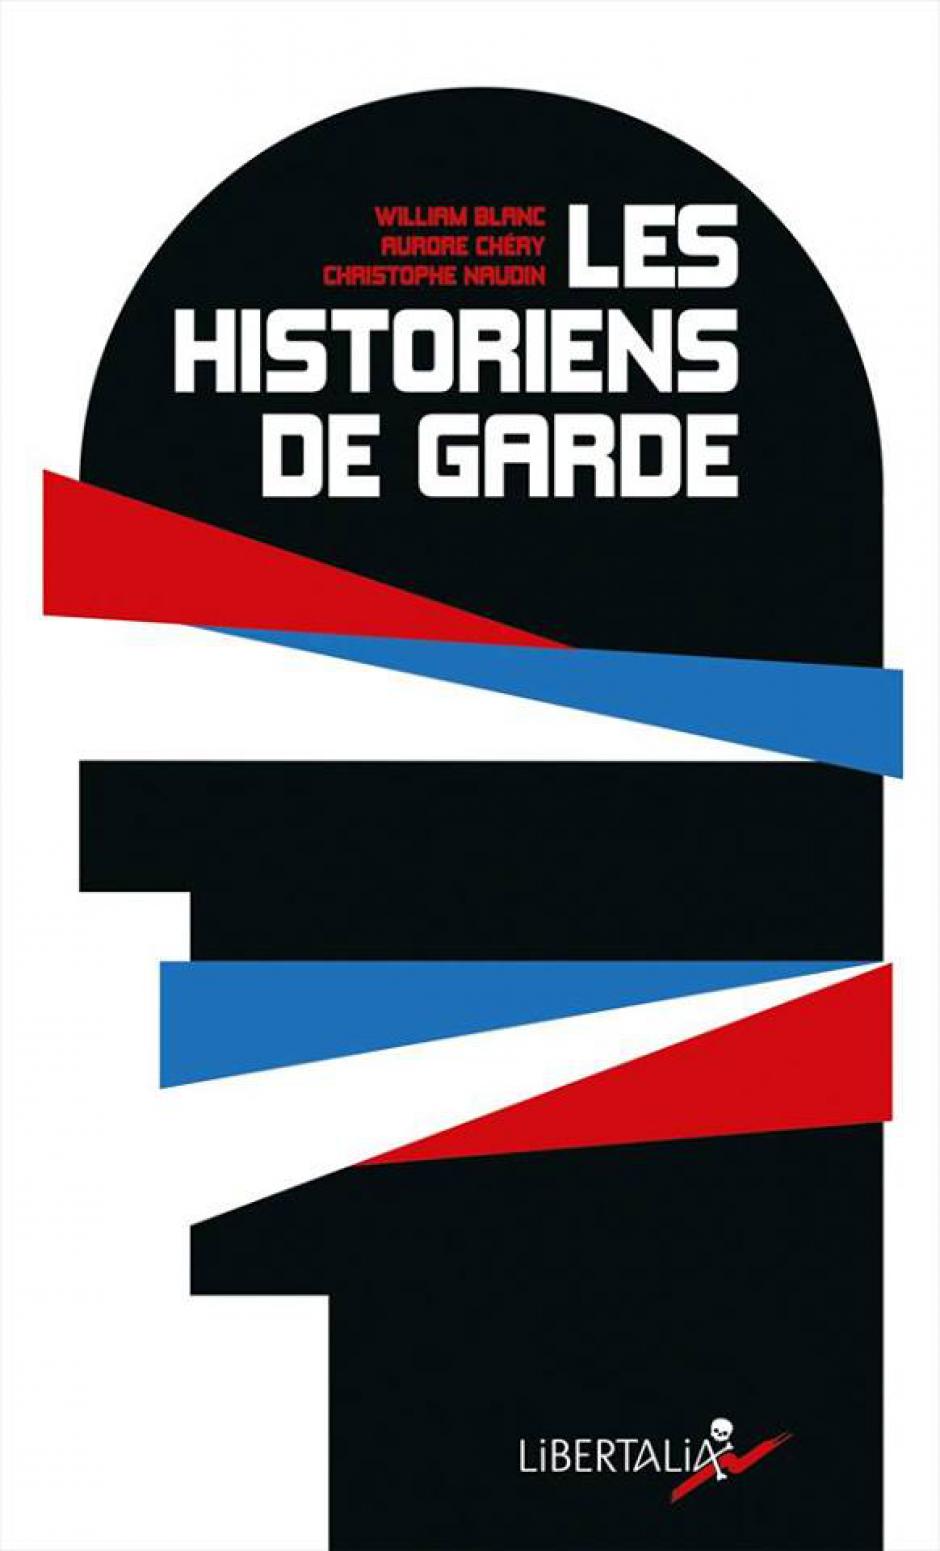 11 mars, Erquery - La Grange Erquery-Conférence « Les historiens de garde », avec William Blanc